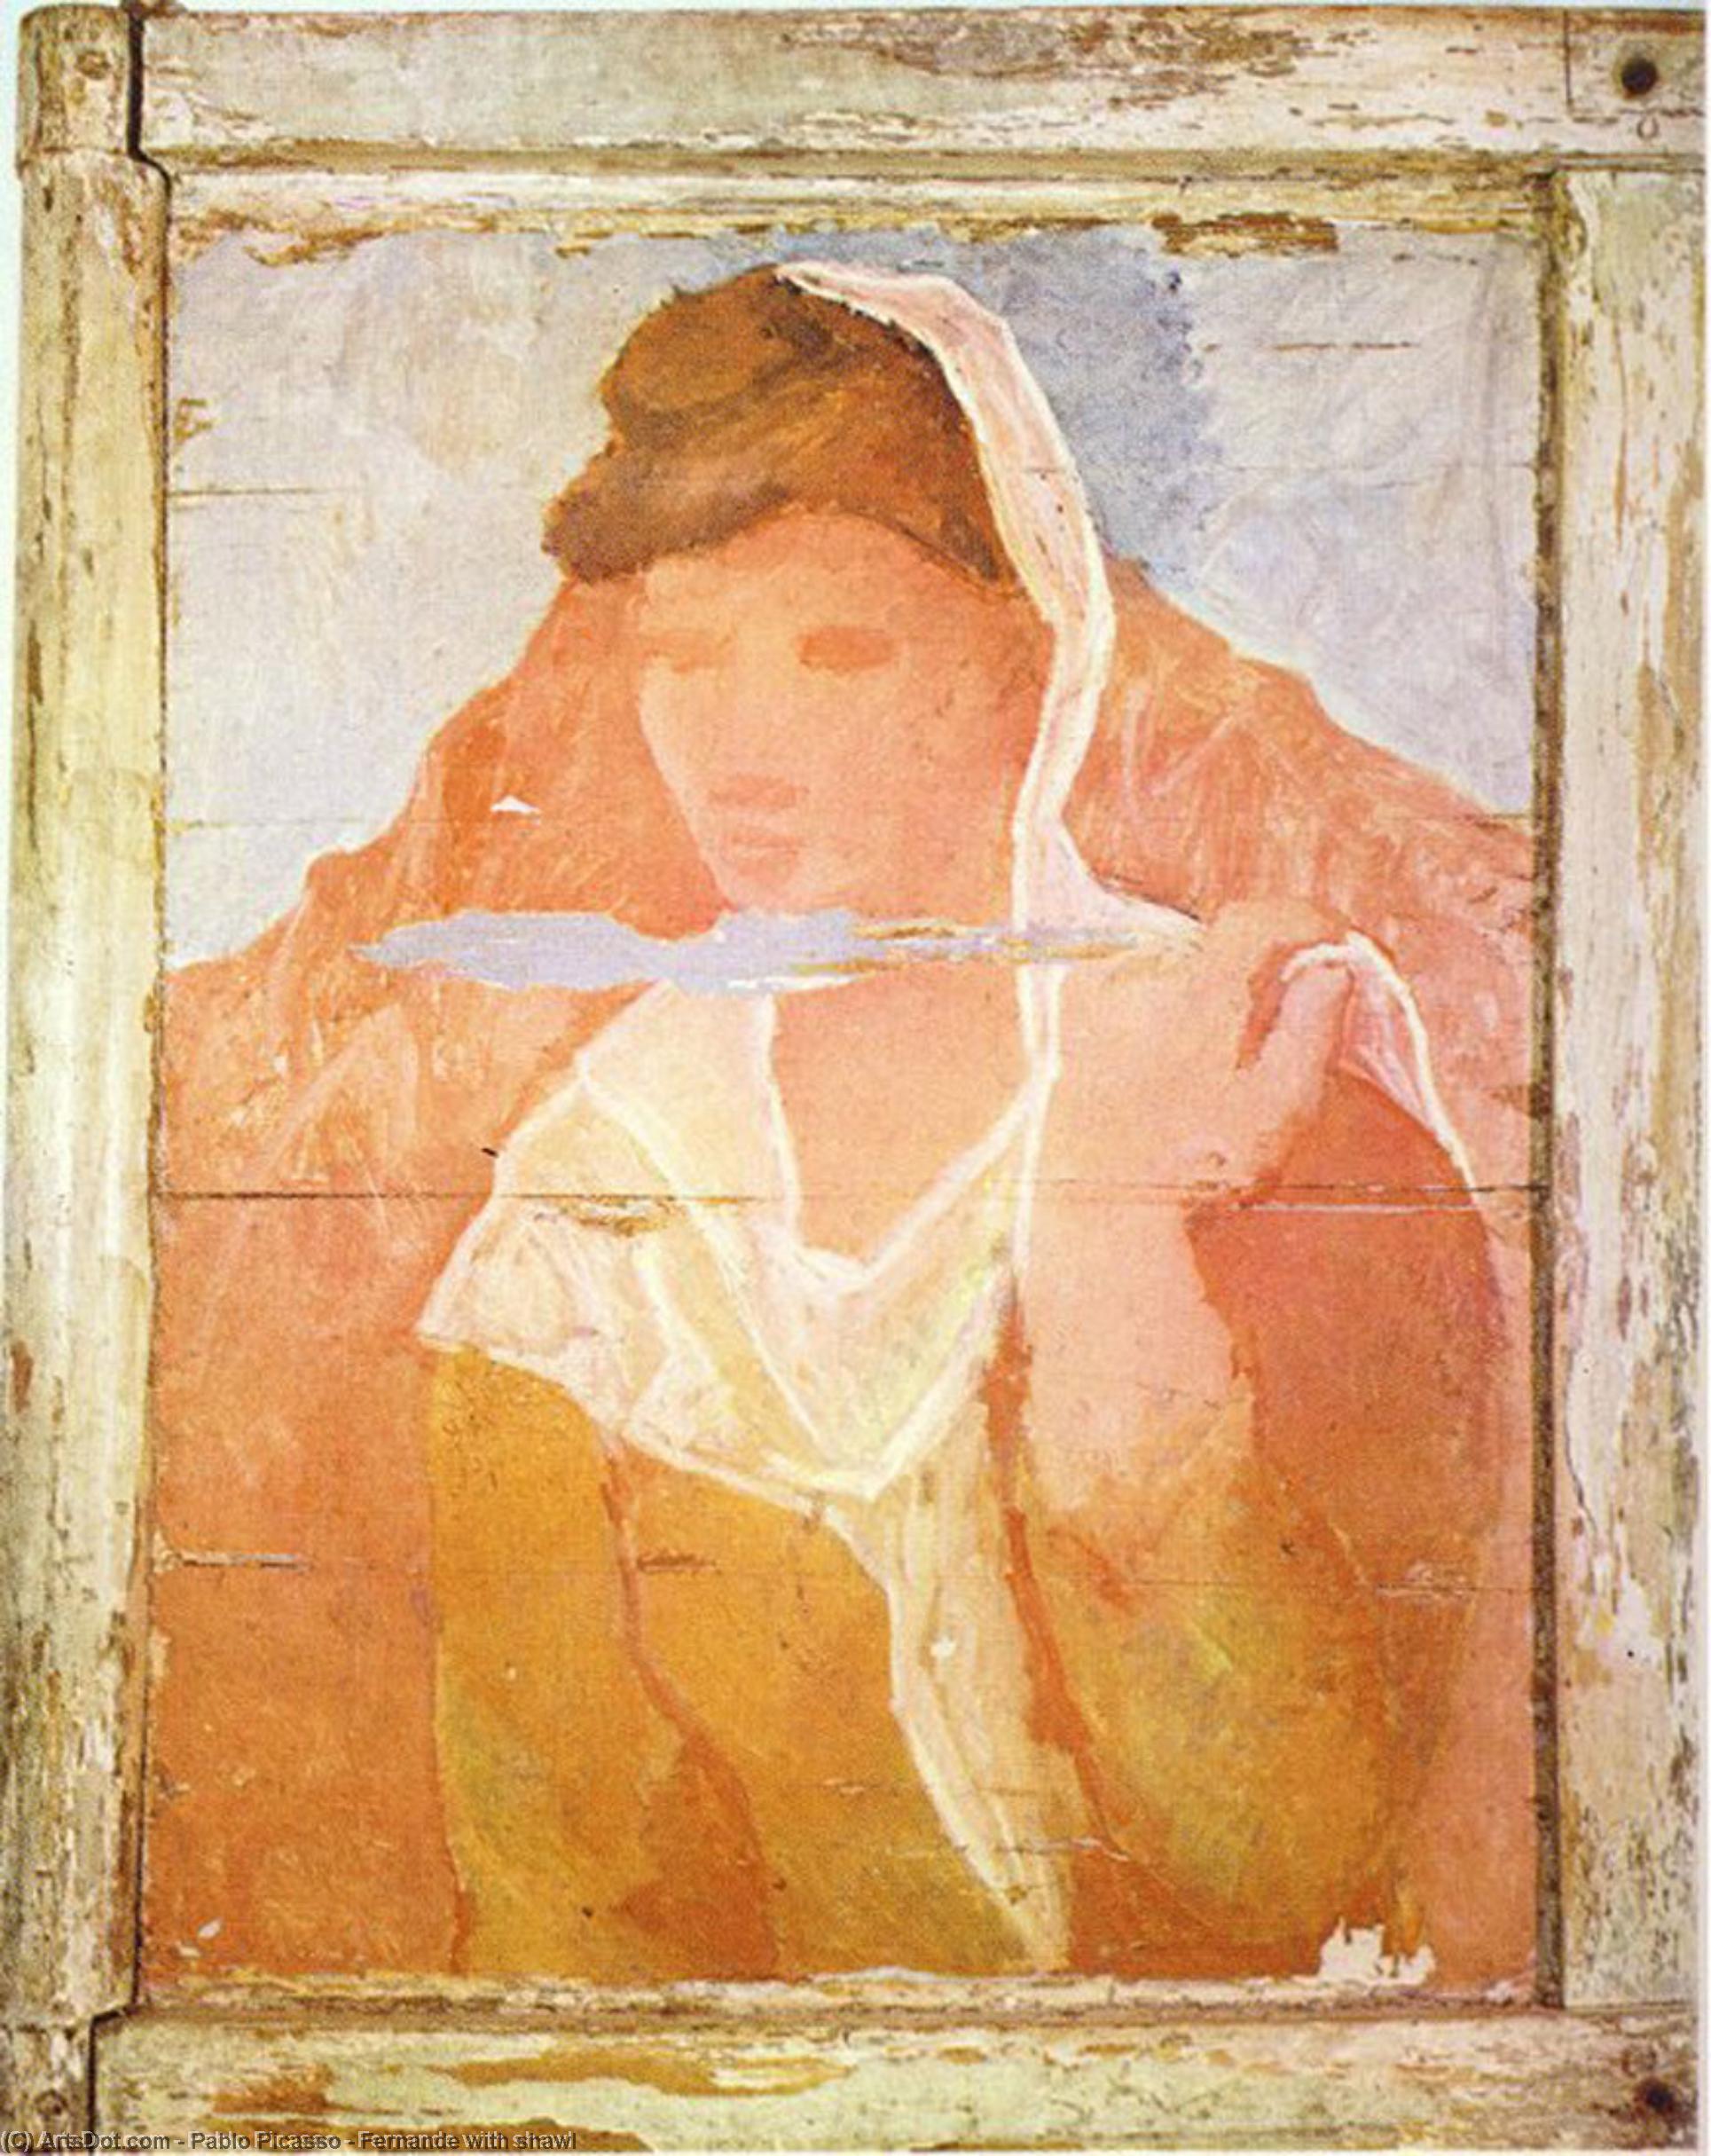 Wikioo.org - Bách khoa toàn thư về mỹ thuật - Vẽ tranh, Tác phẩm nghệ thuật Pablo Picasso - Fernande with shawl